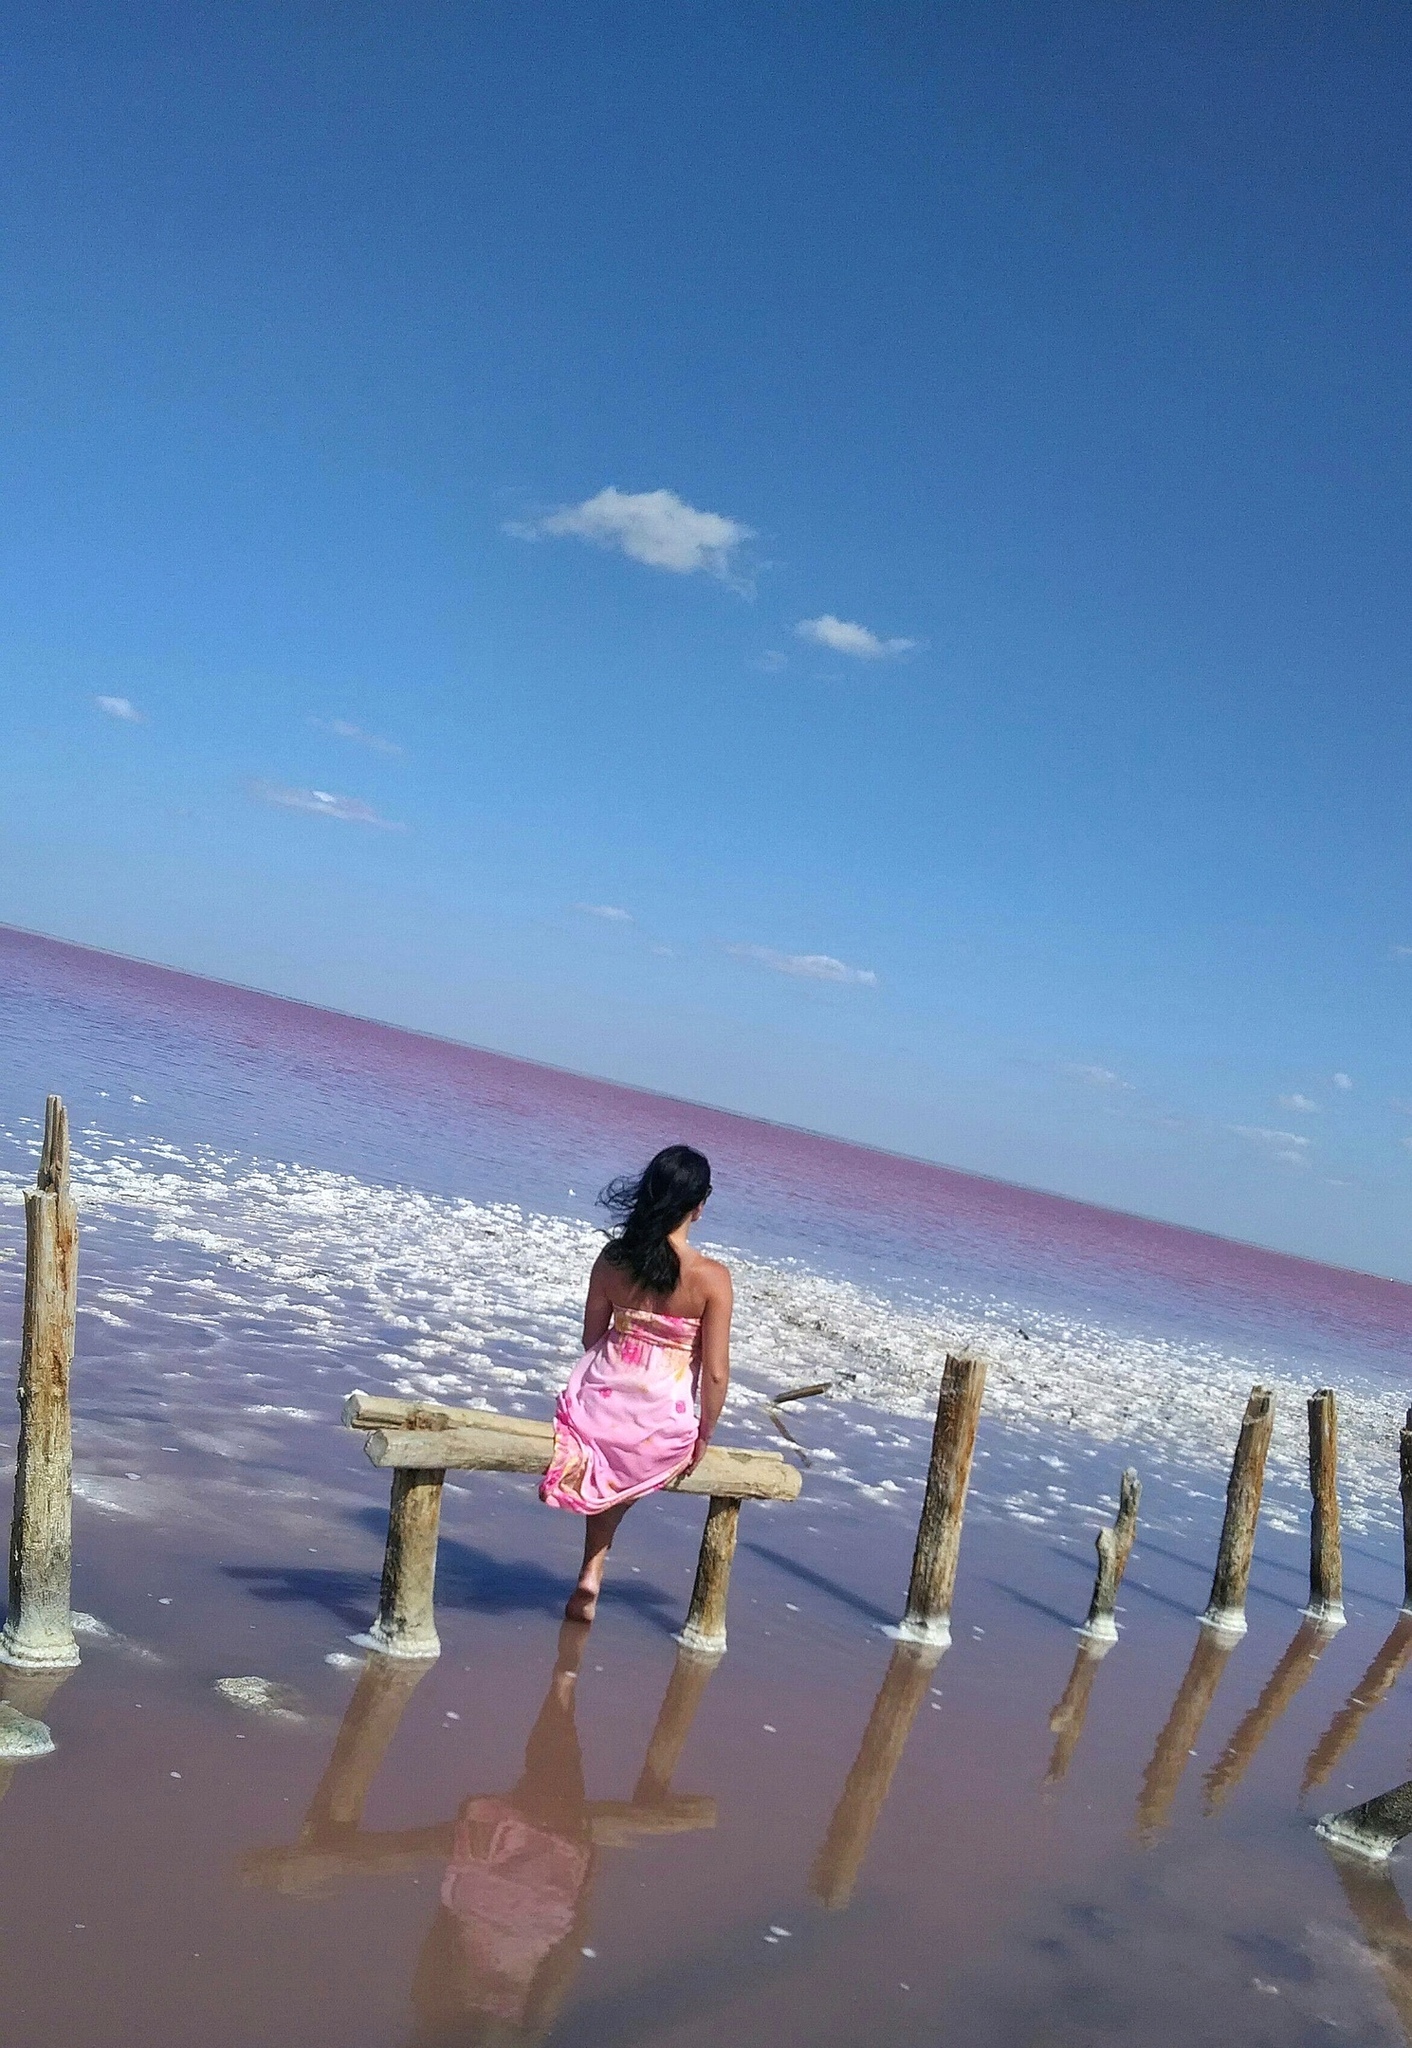 розовое озеро под евпаторией